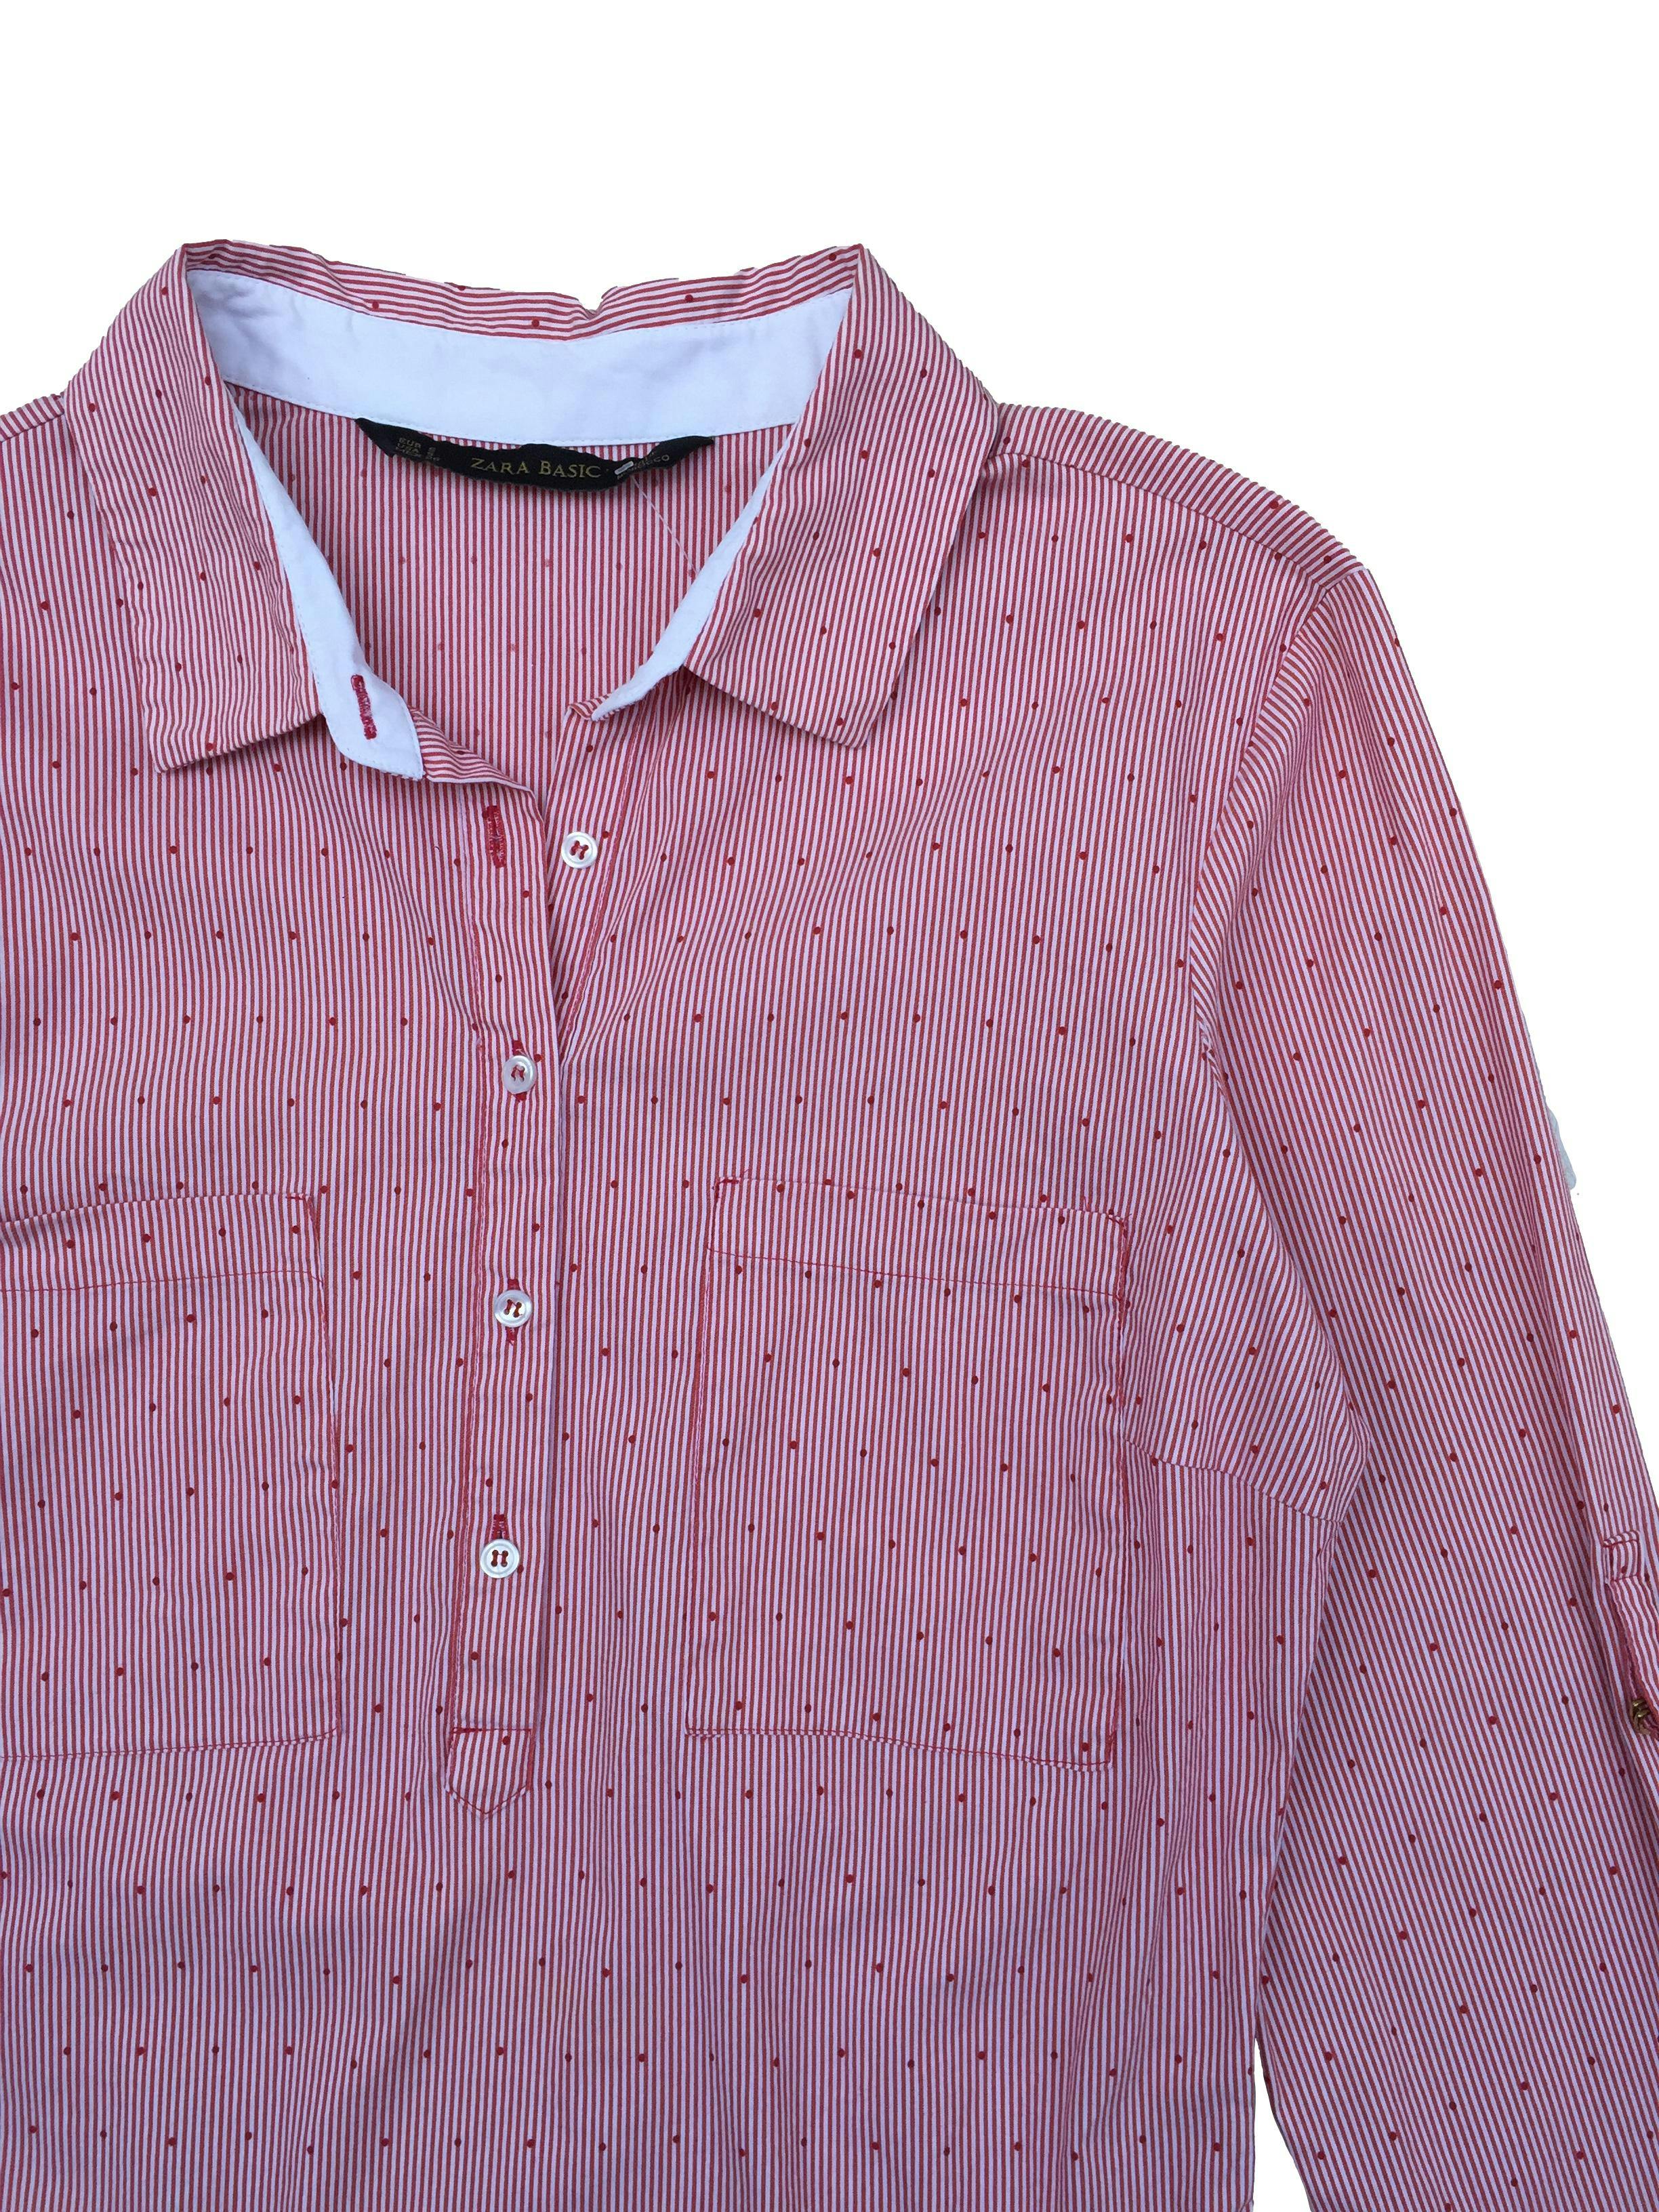 Blusa Zara a rayas roja y blanca con puntos, cuello camisero con bolsillos frontales y trabillas en mangas. Busto 90cm, Largo 55cm. 